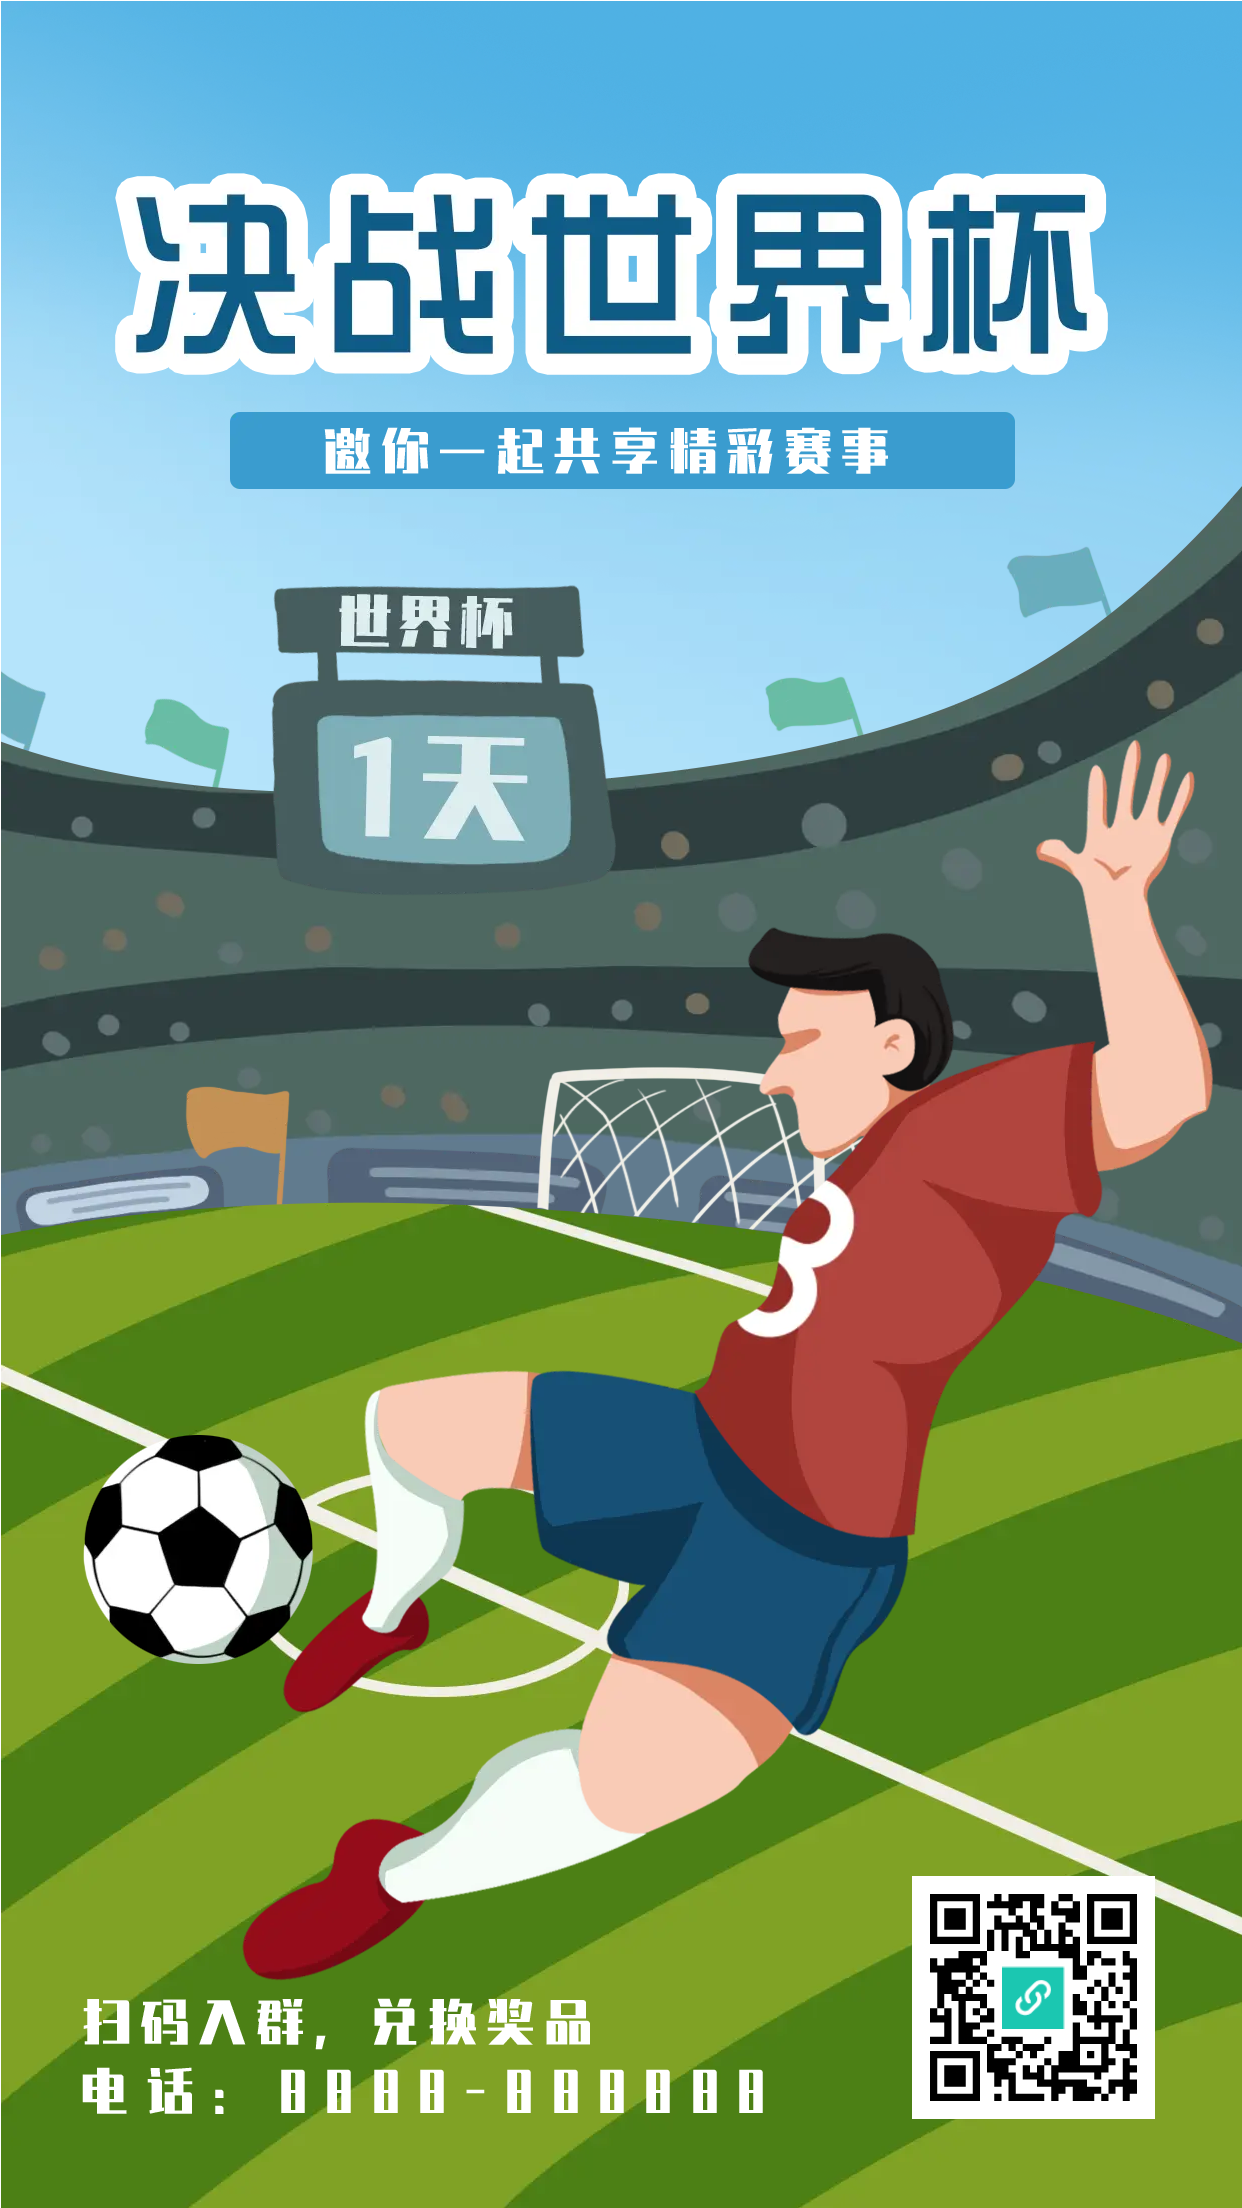 决战世界杯足球比赛手机海报